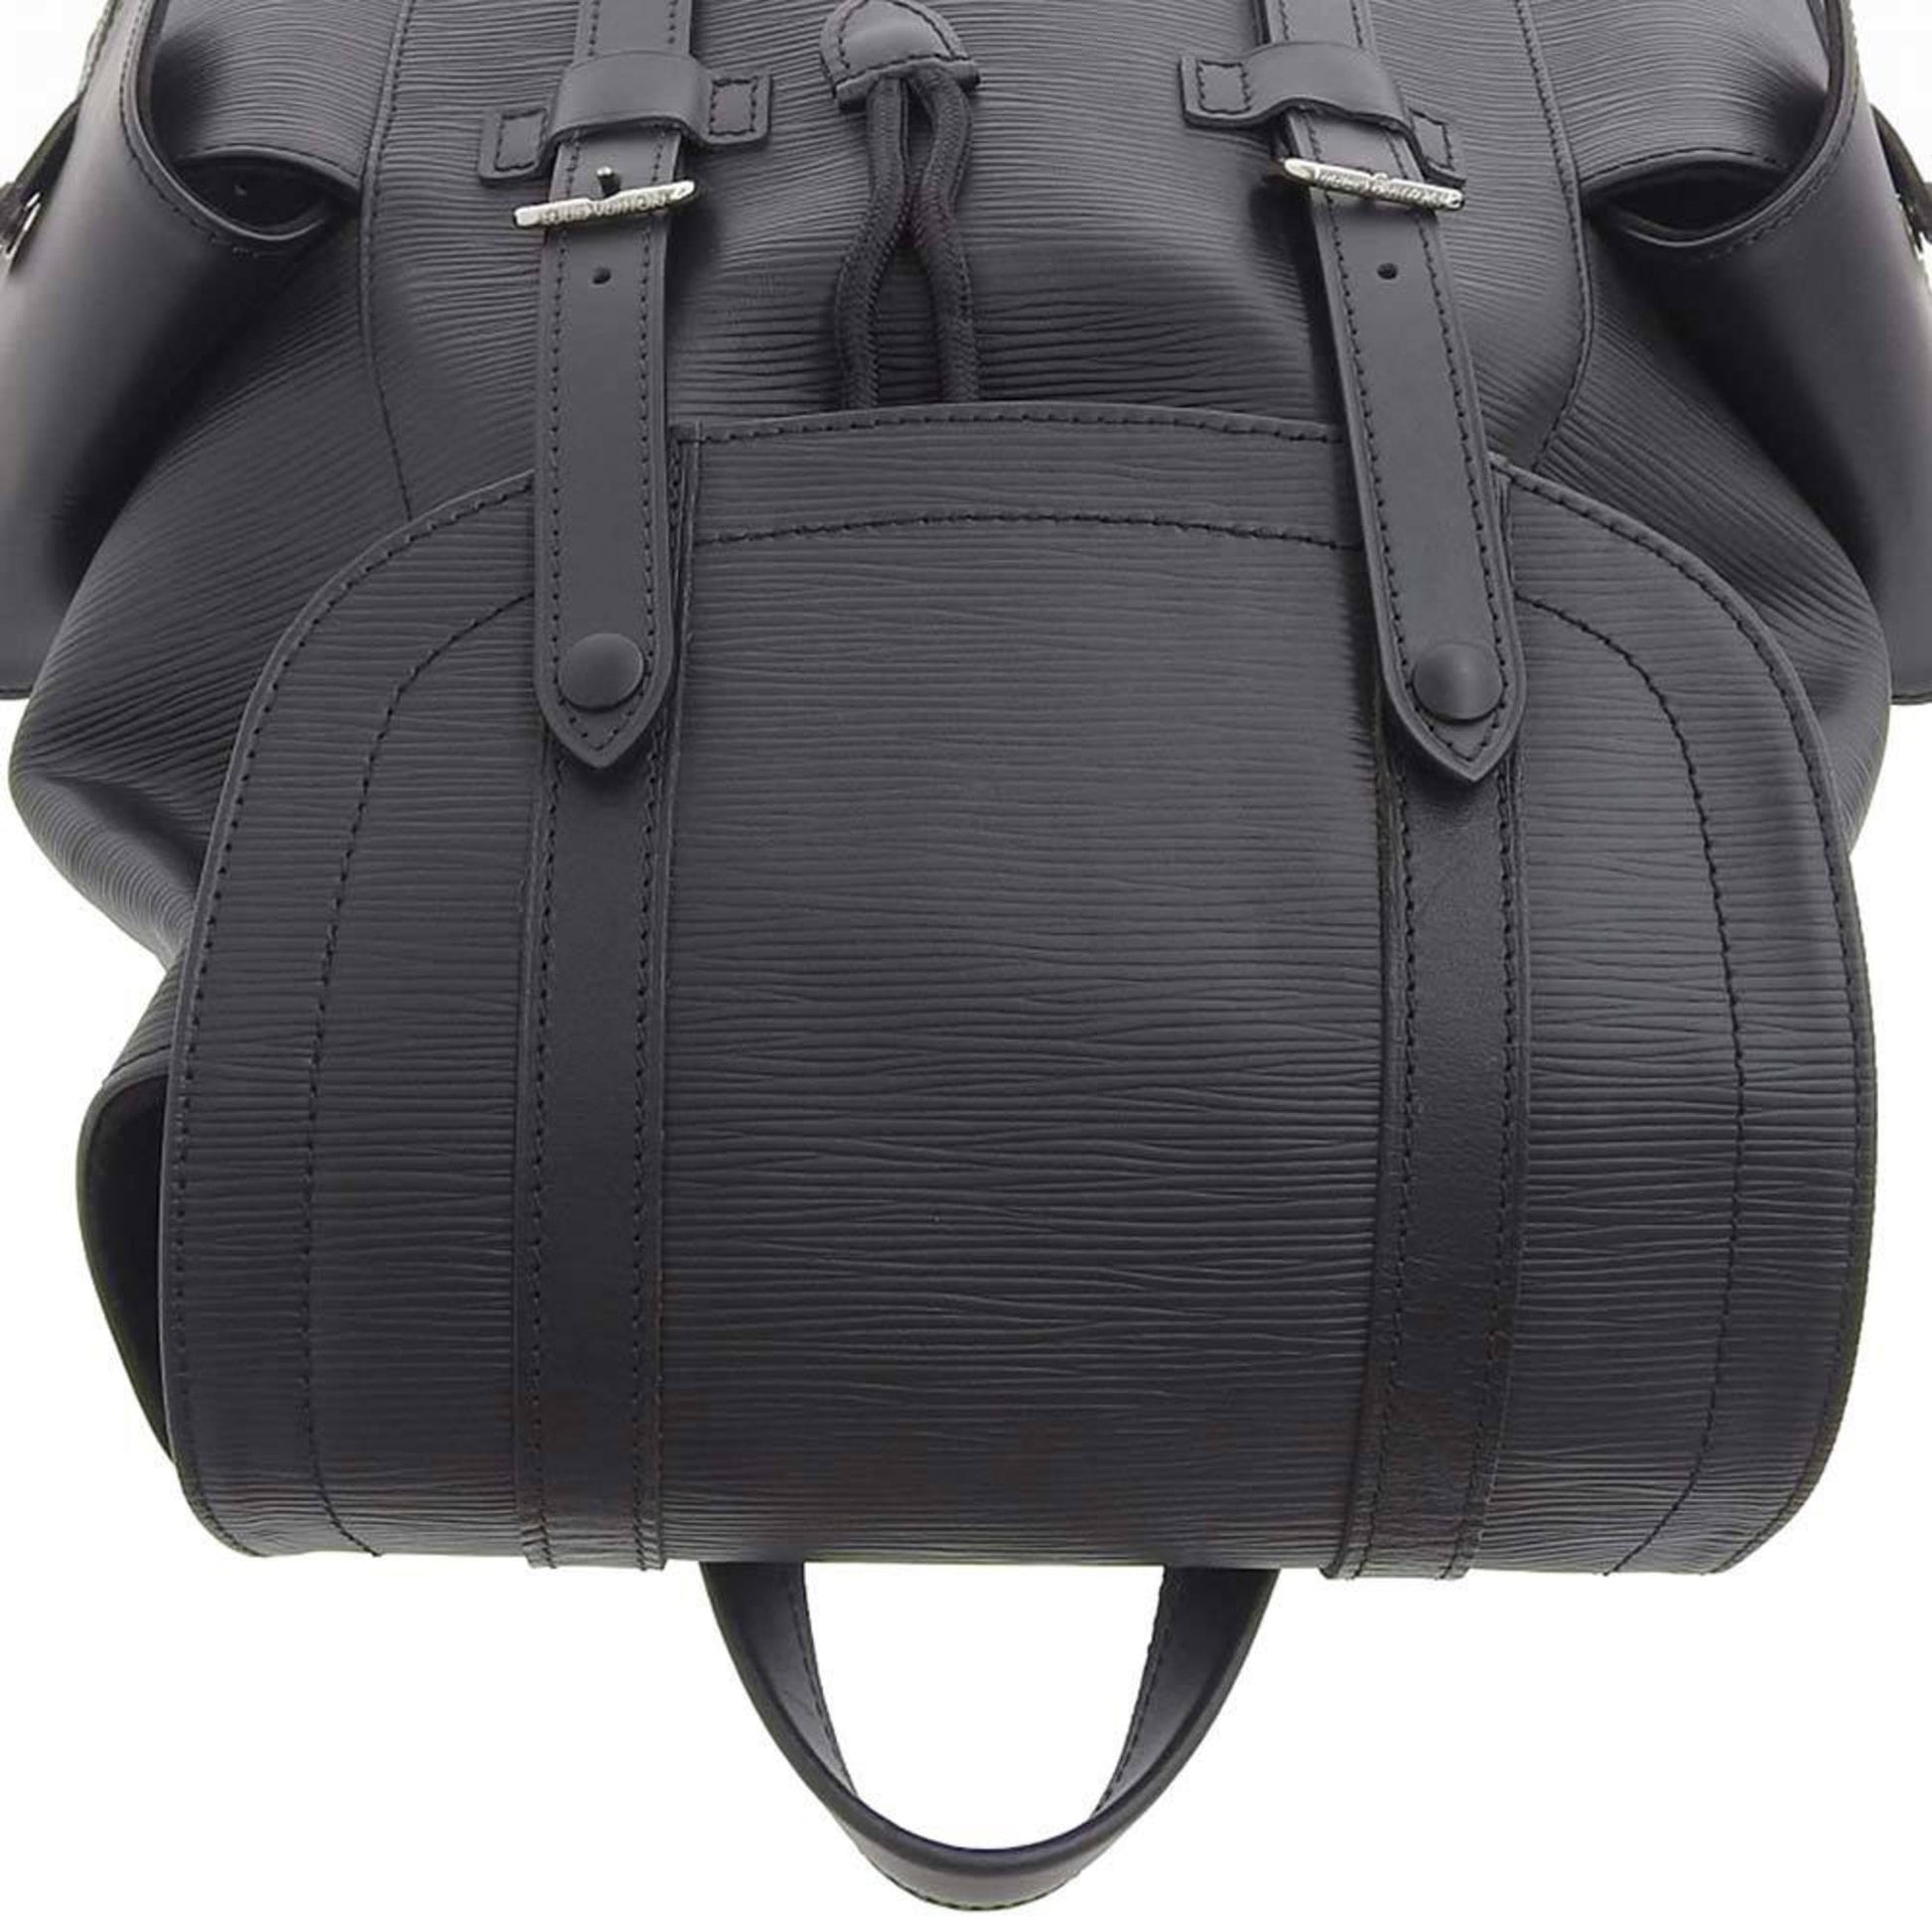 Louis Vuitton Epi Christopher PM rucksack Noir black M50159